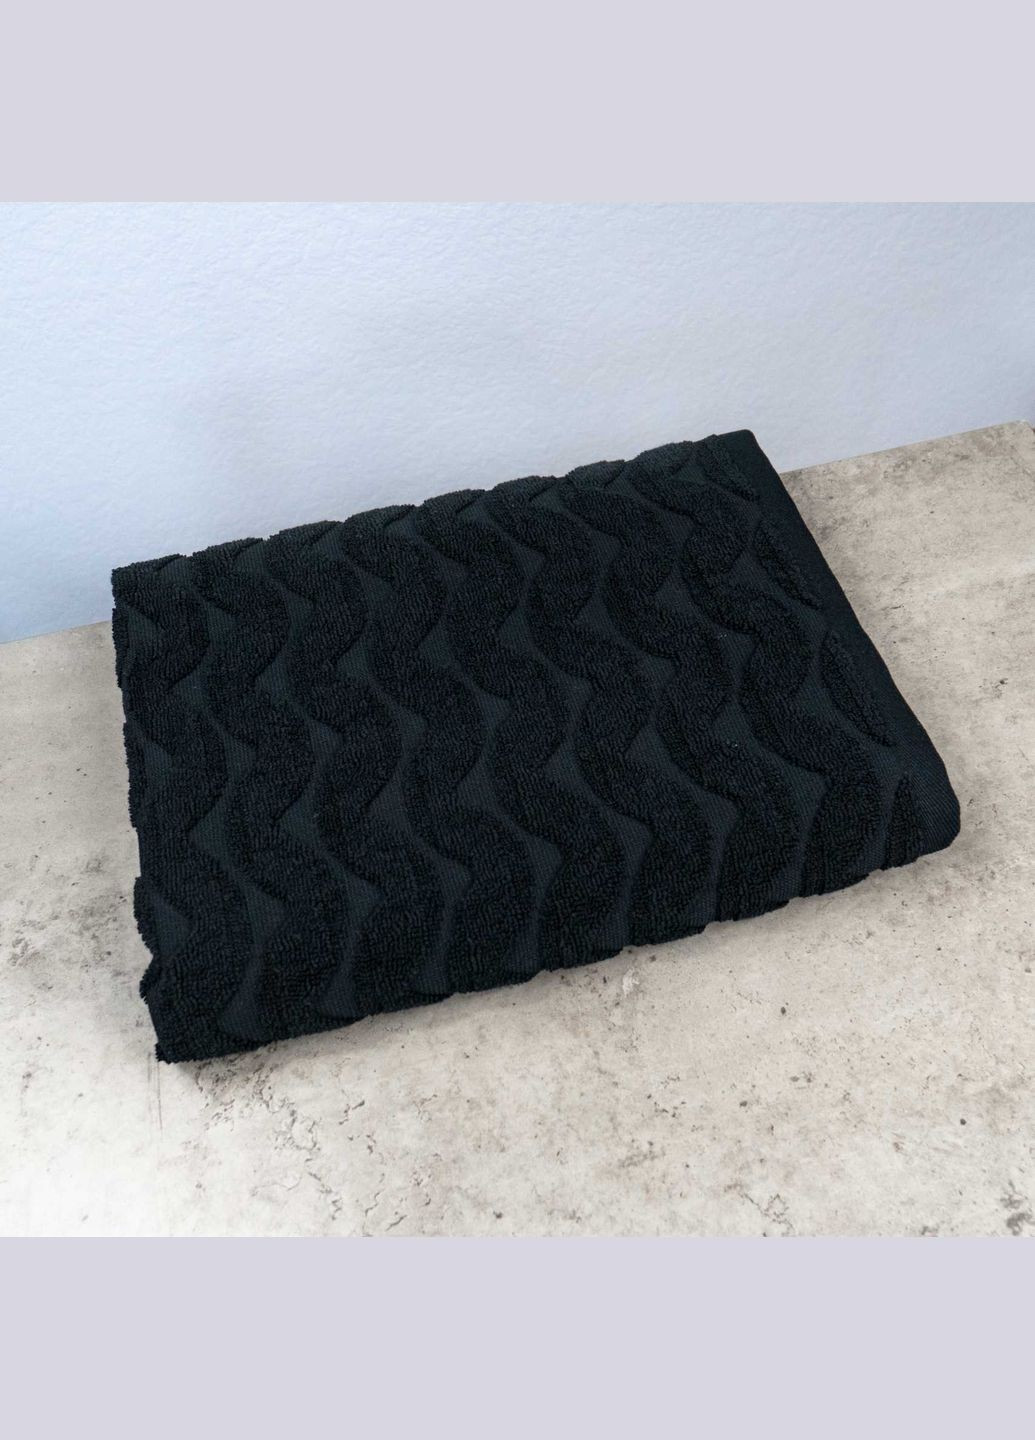 GM Textile комплект махровых полотенец жаккардовых волна 2шт 50х90см, 70х140см 500г/м2 () черный производство -